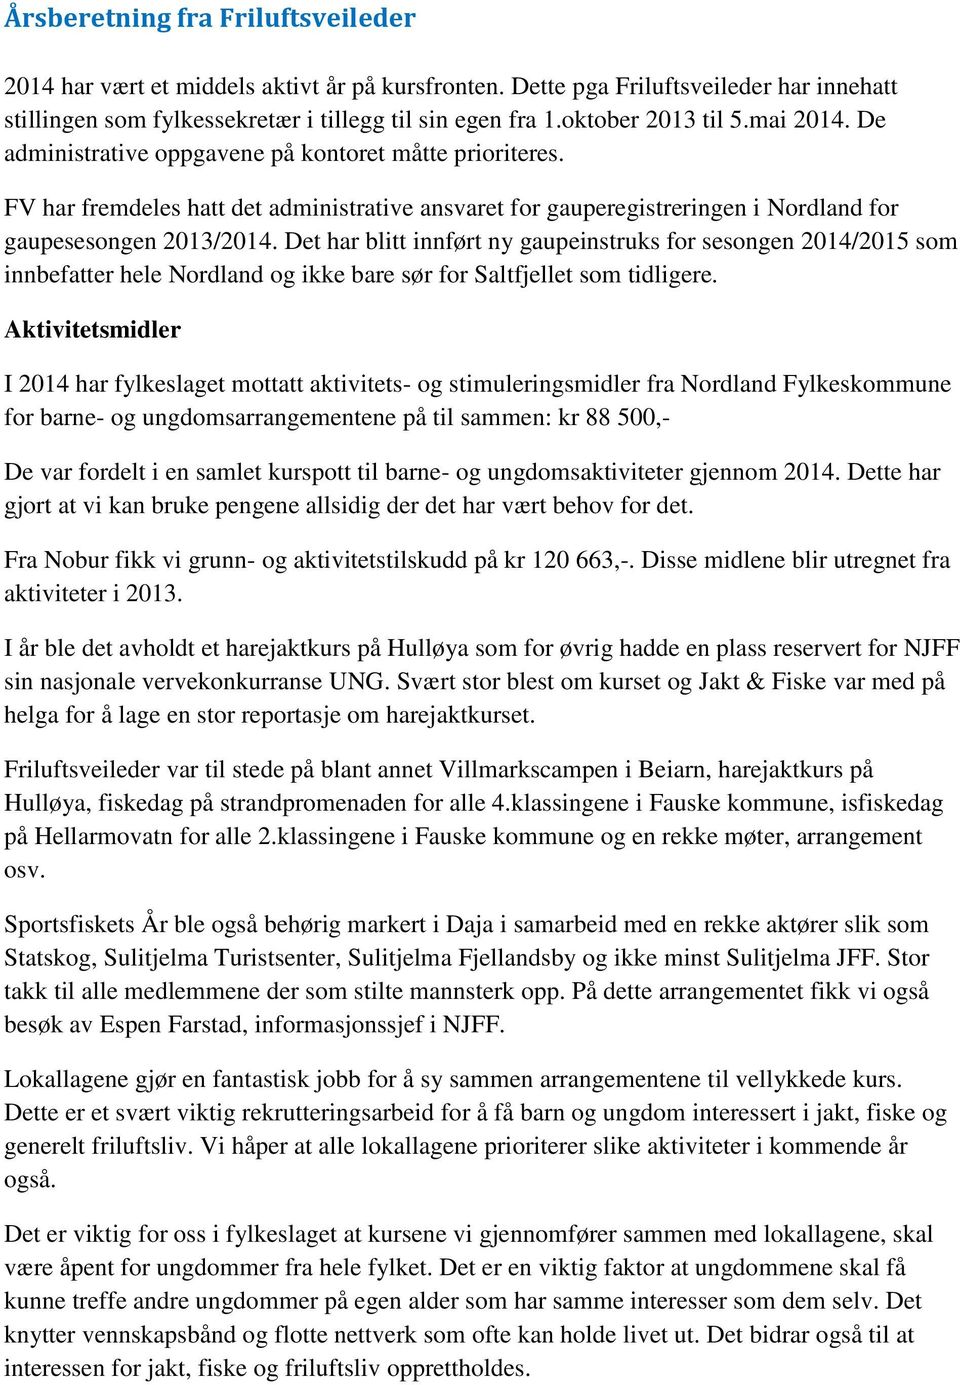 FV har fremdeles hatt det administrative ansvaret for gauperegistreringen i Nordland for gaupesesongen 2013/2014.